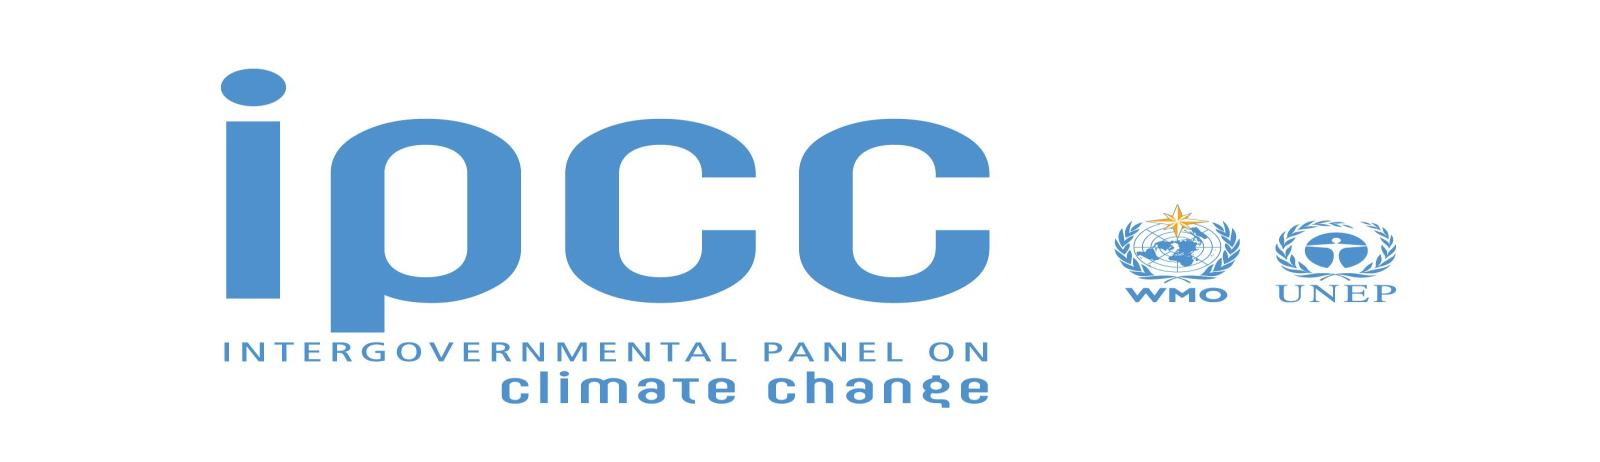 Hükümetlerarası İklim Değişikliği Paneli (Intergovernmental Panel on Climate Change, kısaca IPCC) karbon depolama miktarlarının tespiti için 3 farklı yöntem belirlemiştir.